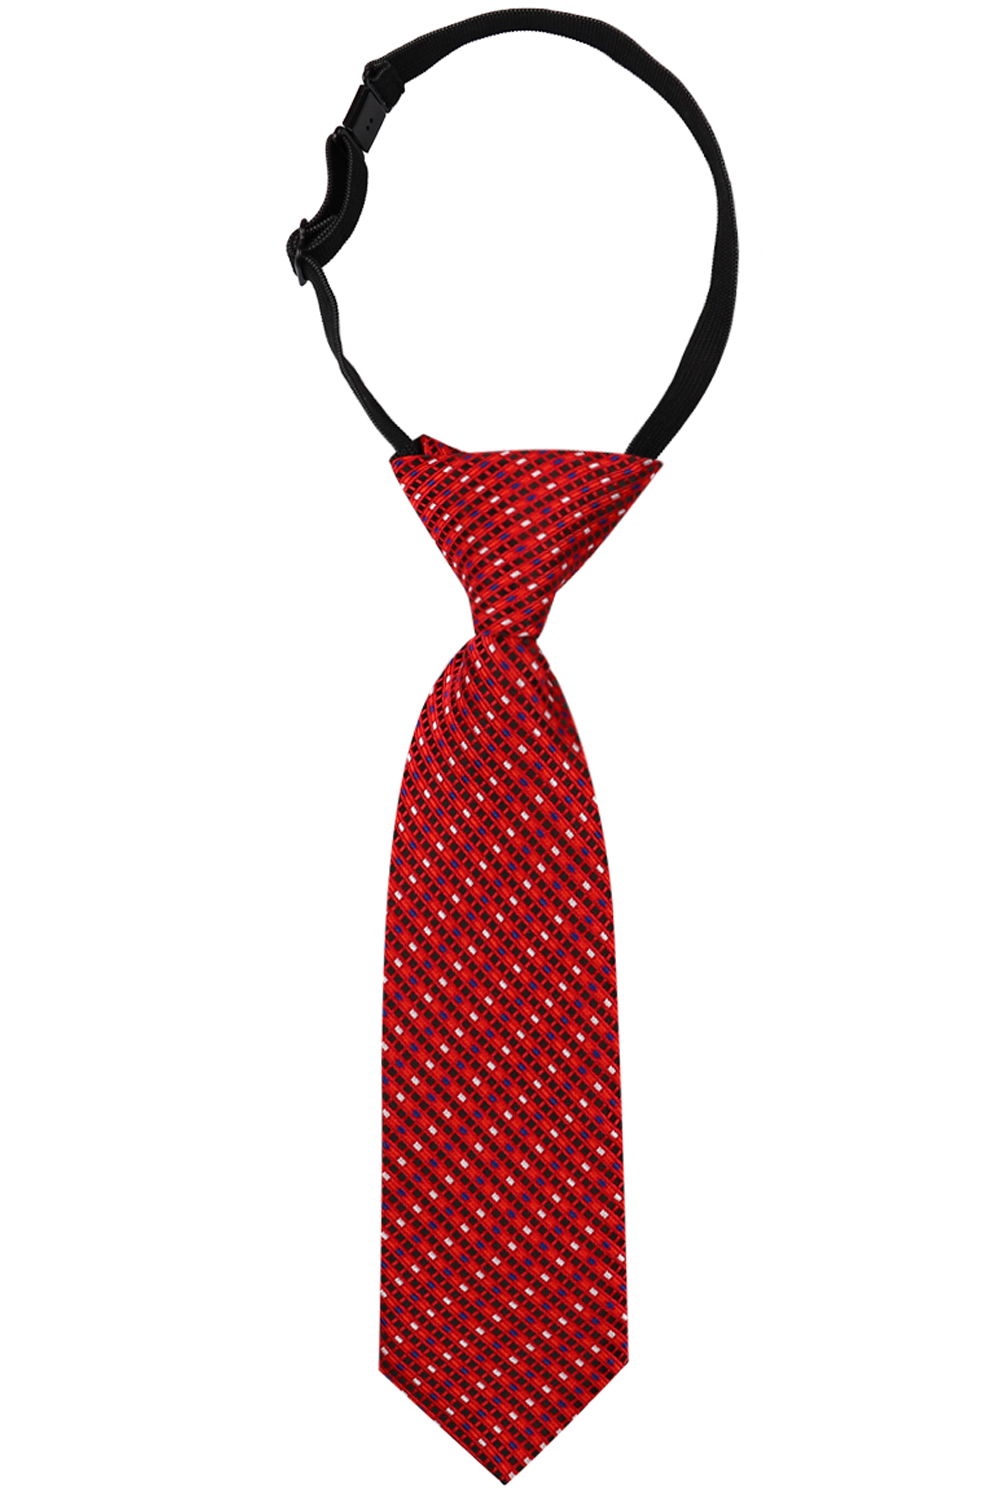 Красный галстук. Красный галстук для мальчика. Детский галстук. Галстук детский красный. Галстук для мальчика купить